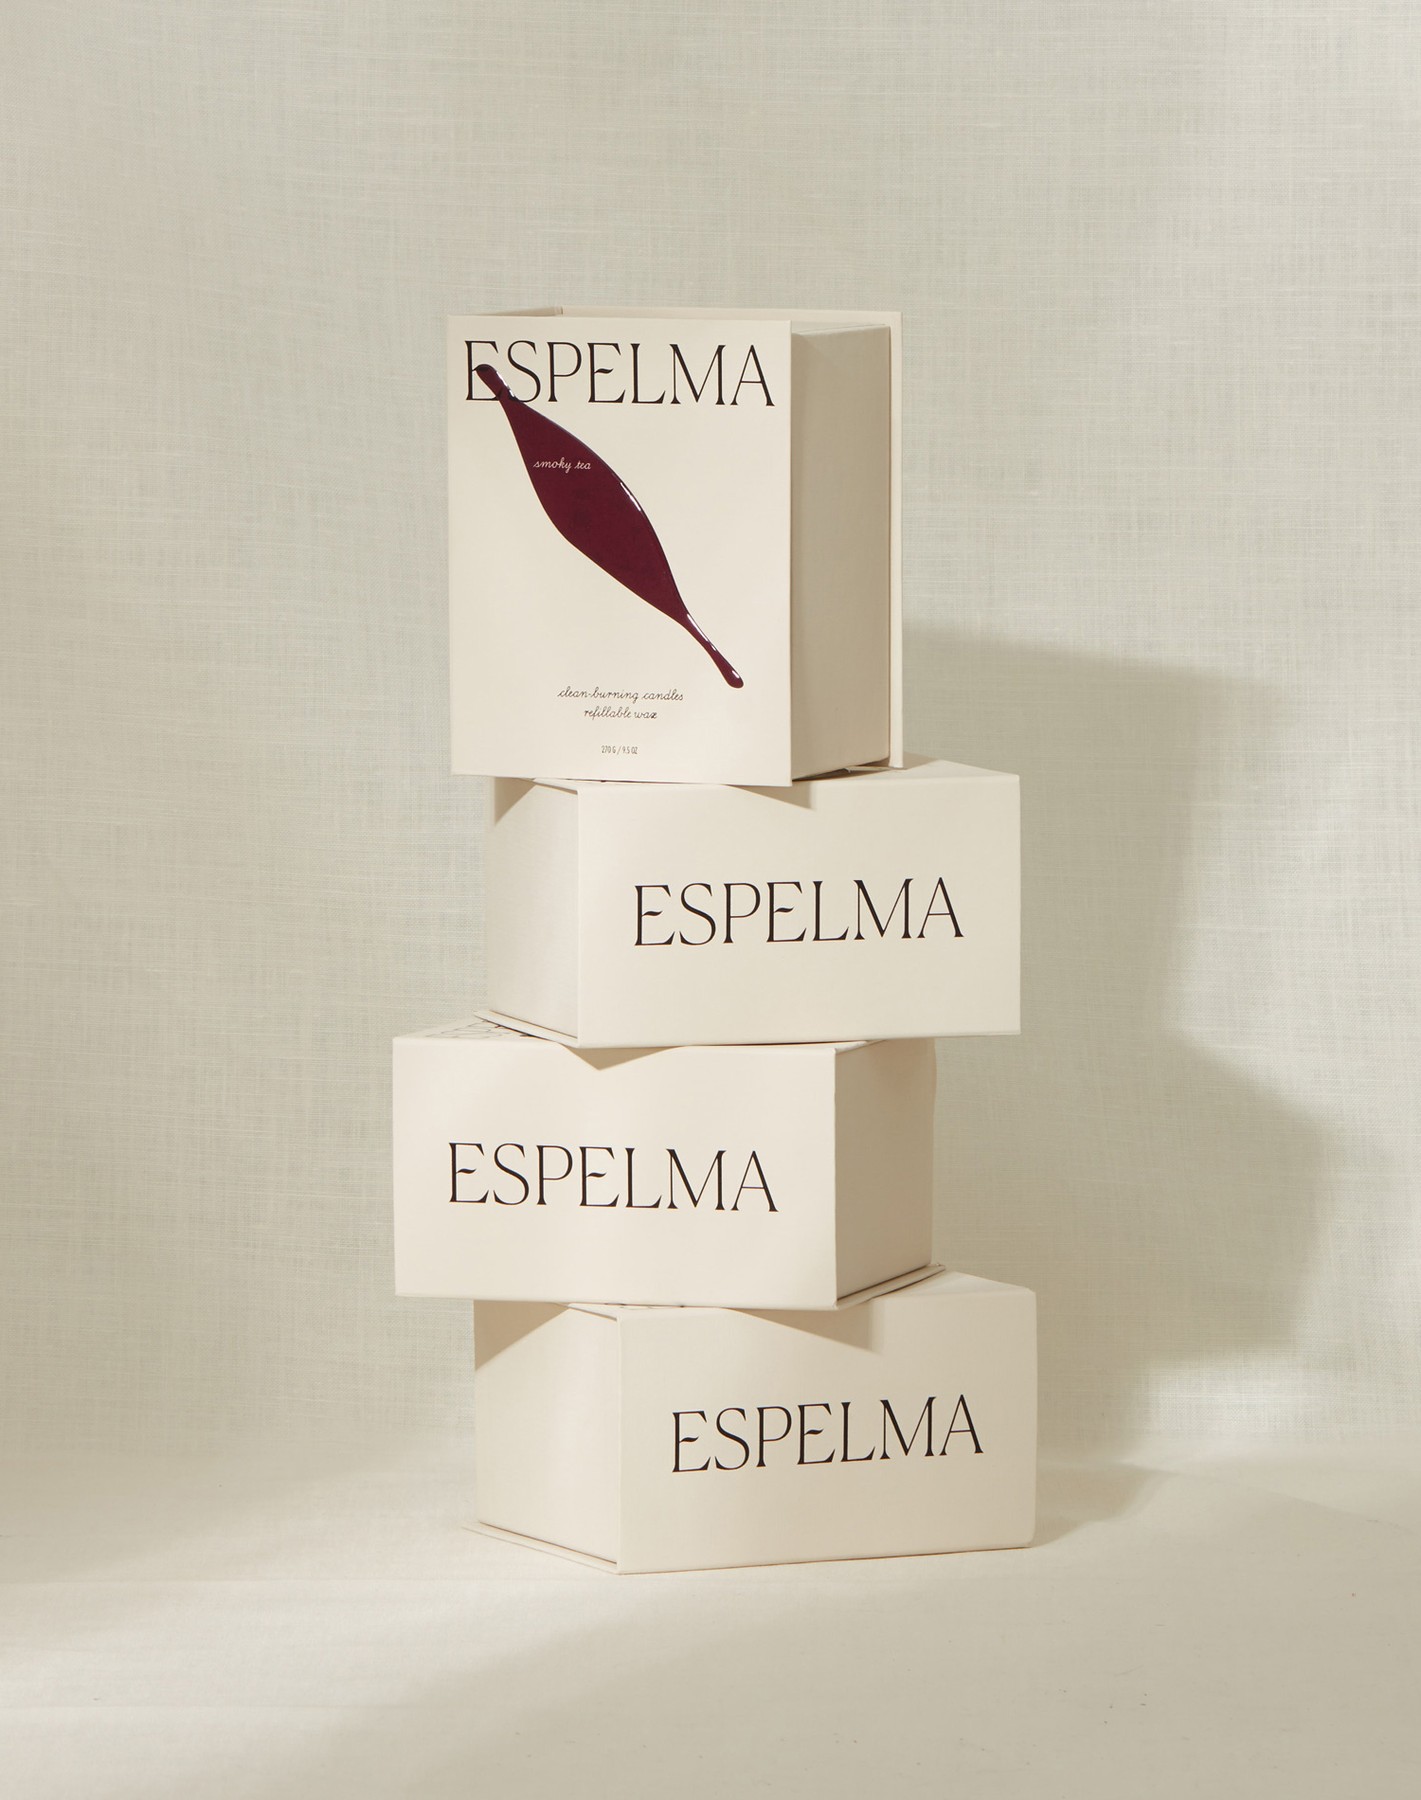 6-espelma-candles-branding-packaging-design-commission-london-uk-bpo.jpg